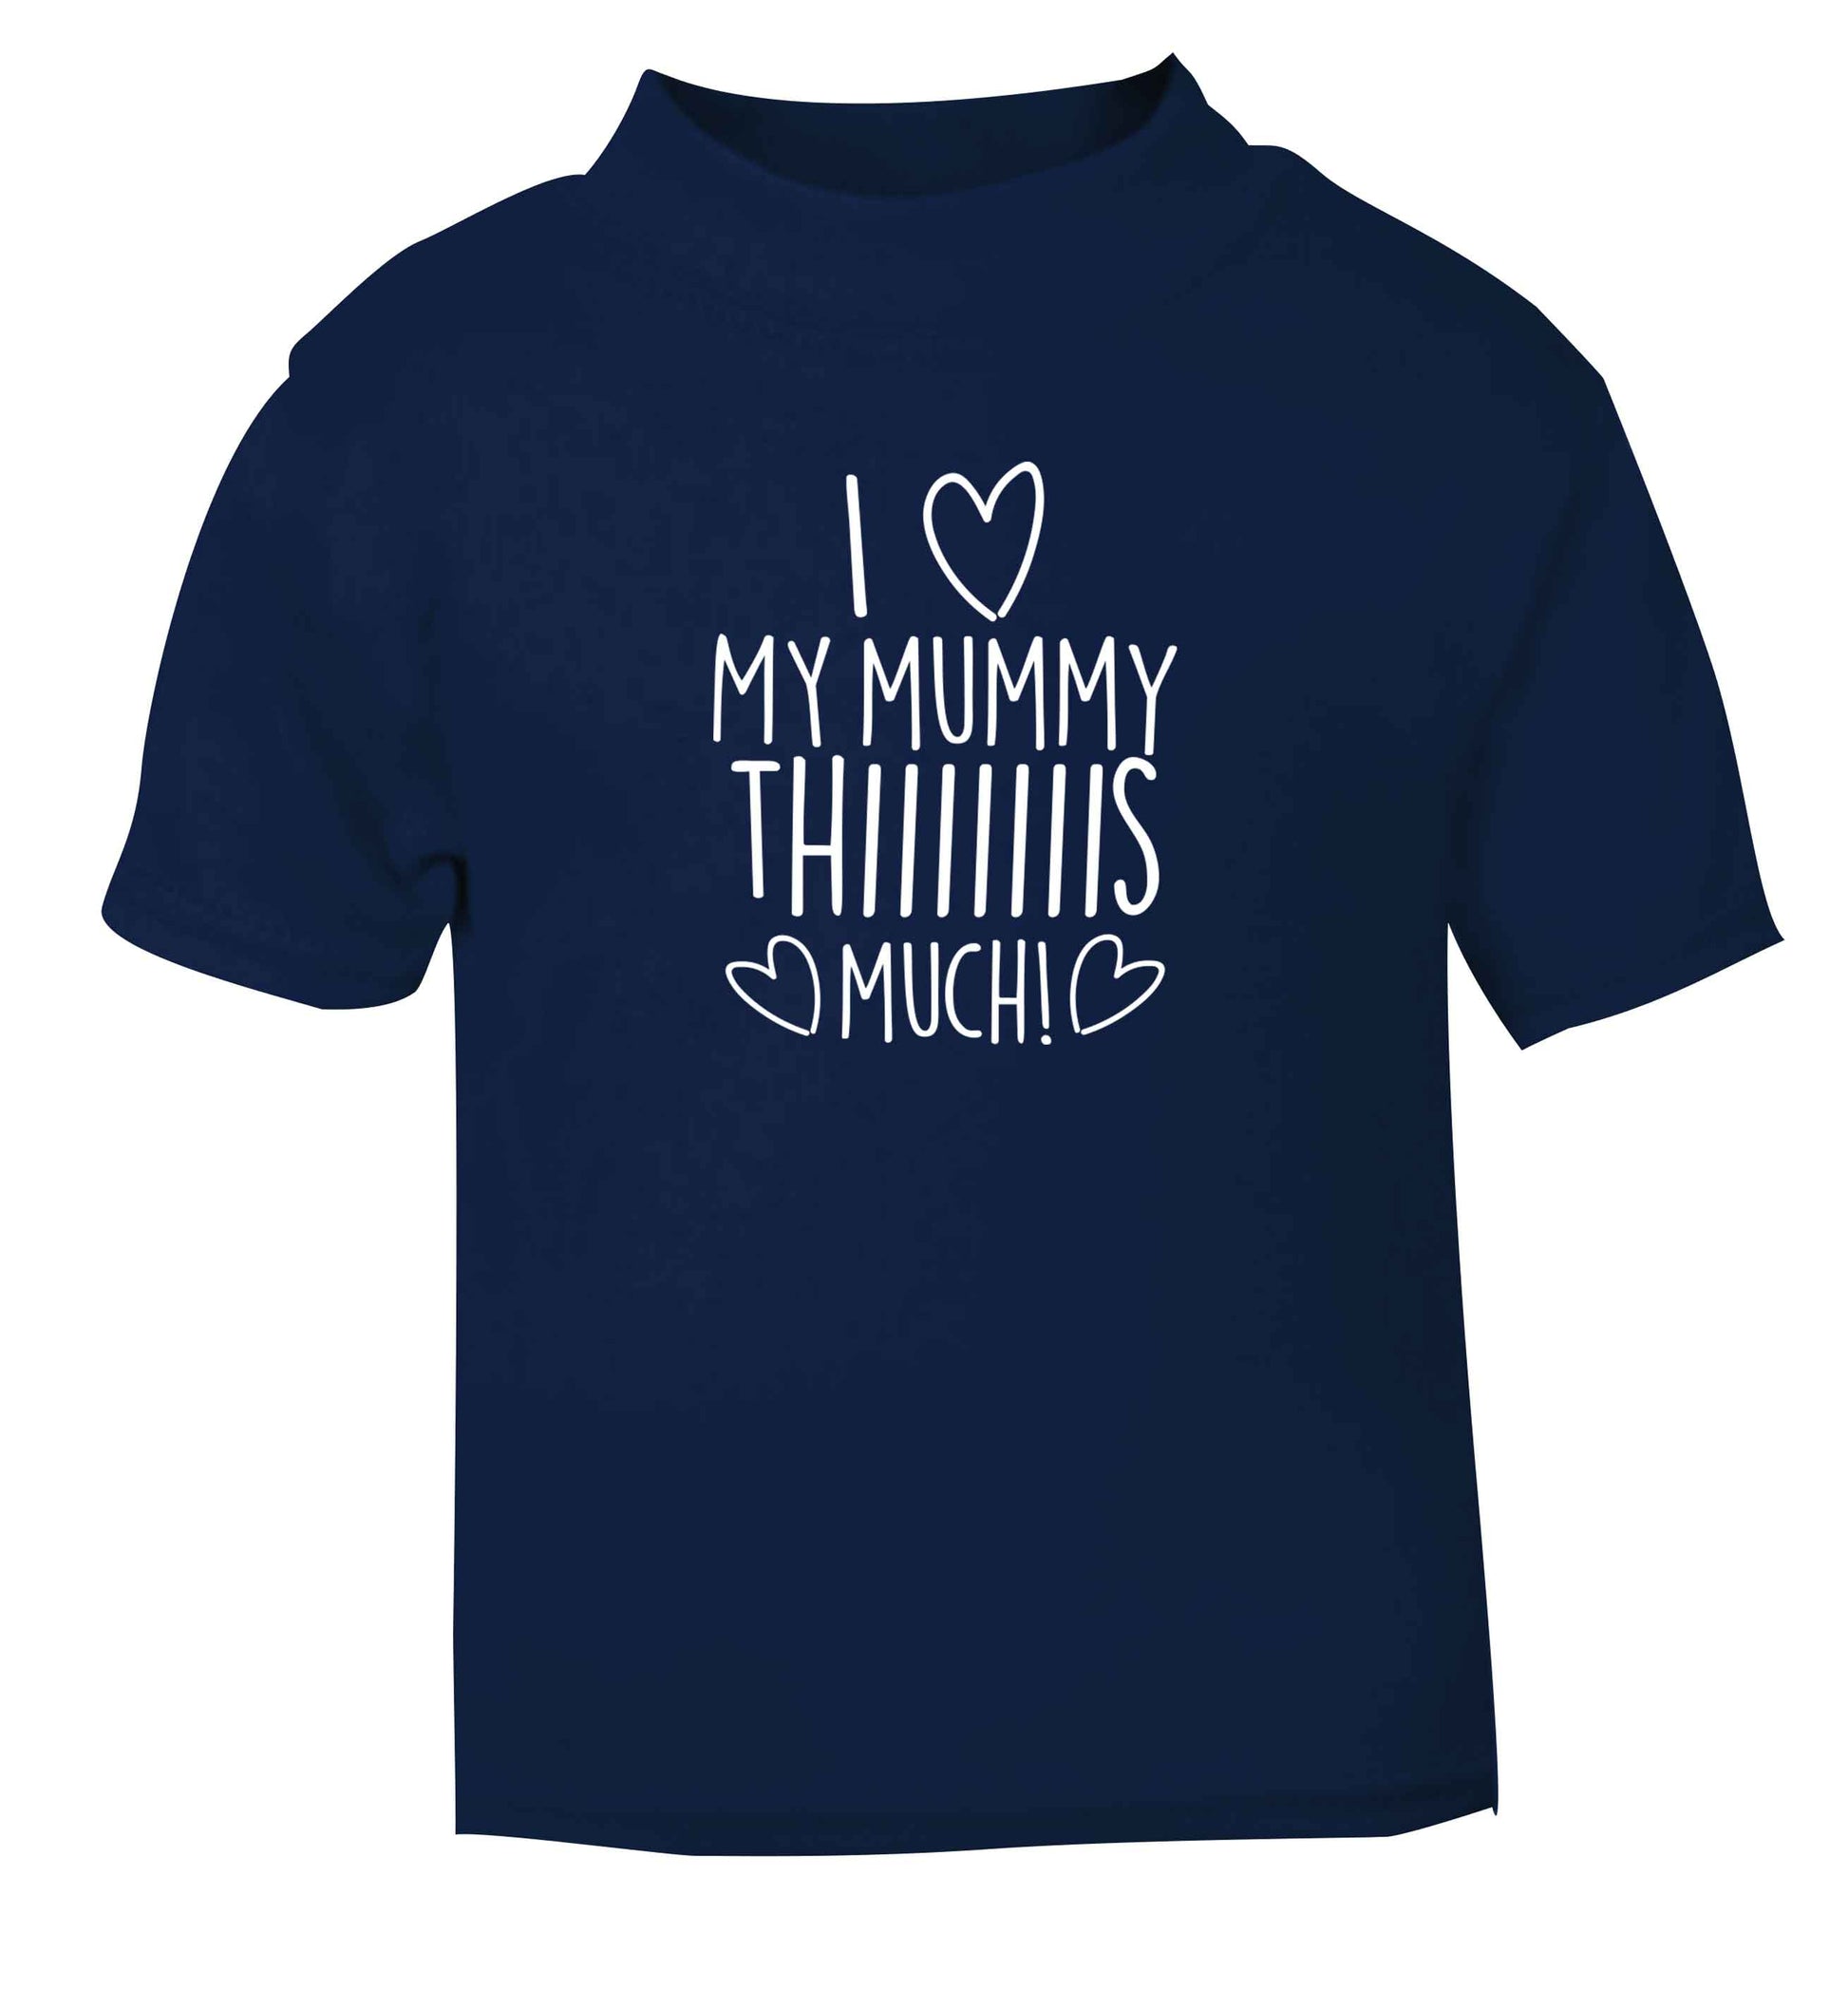 I love my mummy thiiiiis much! navy baby toddler Tshirt 2 Years